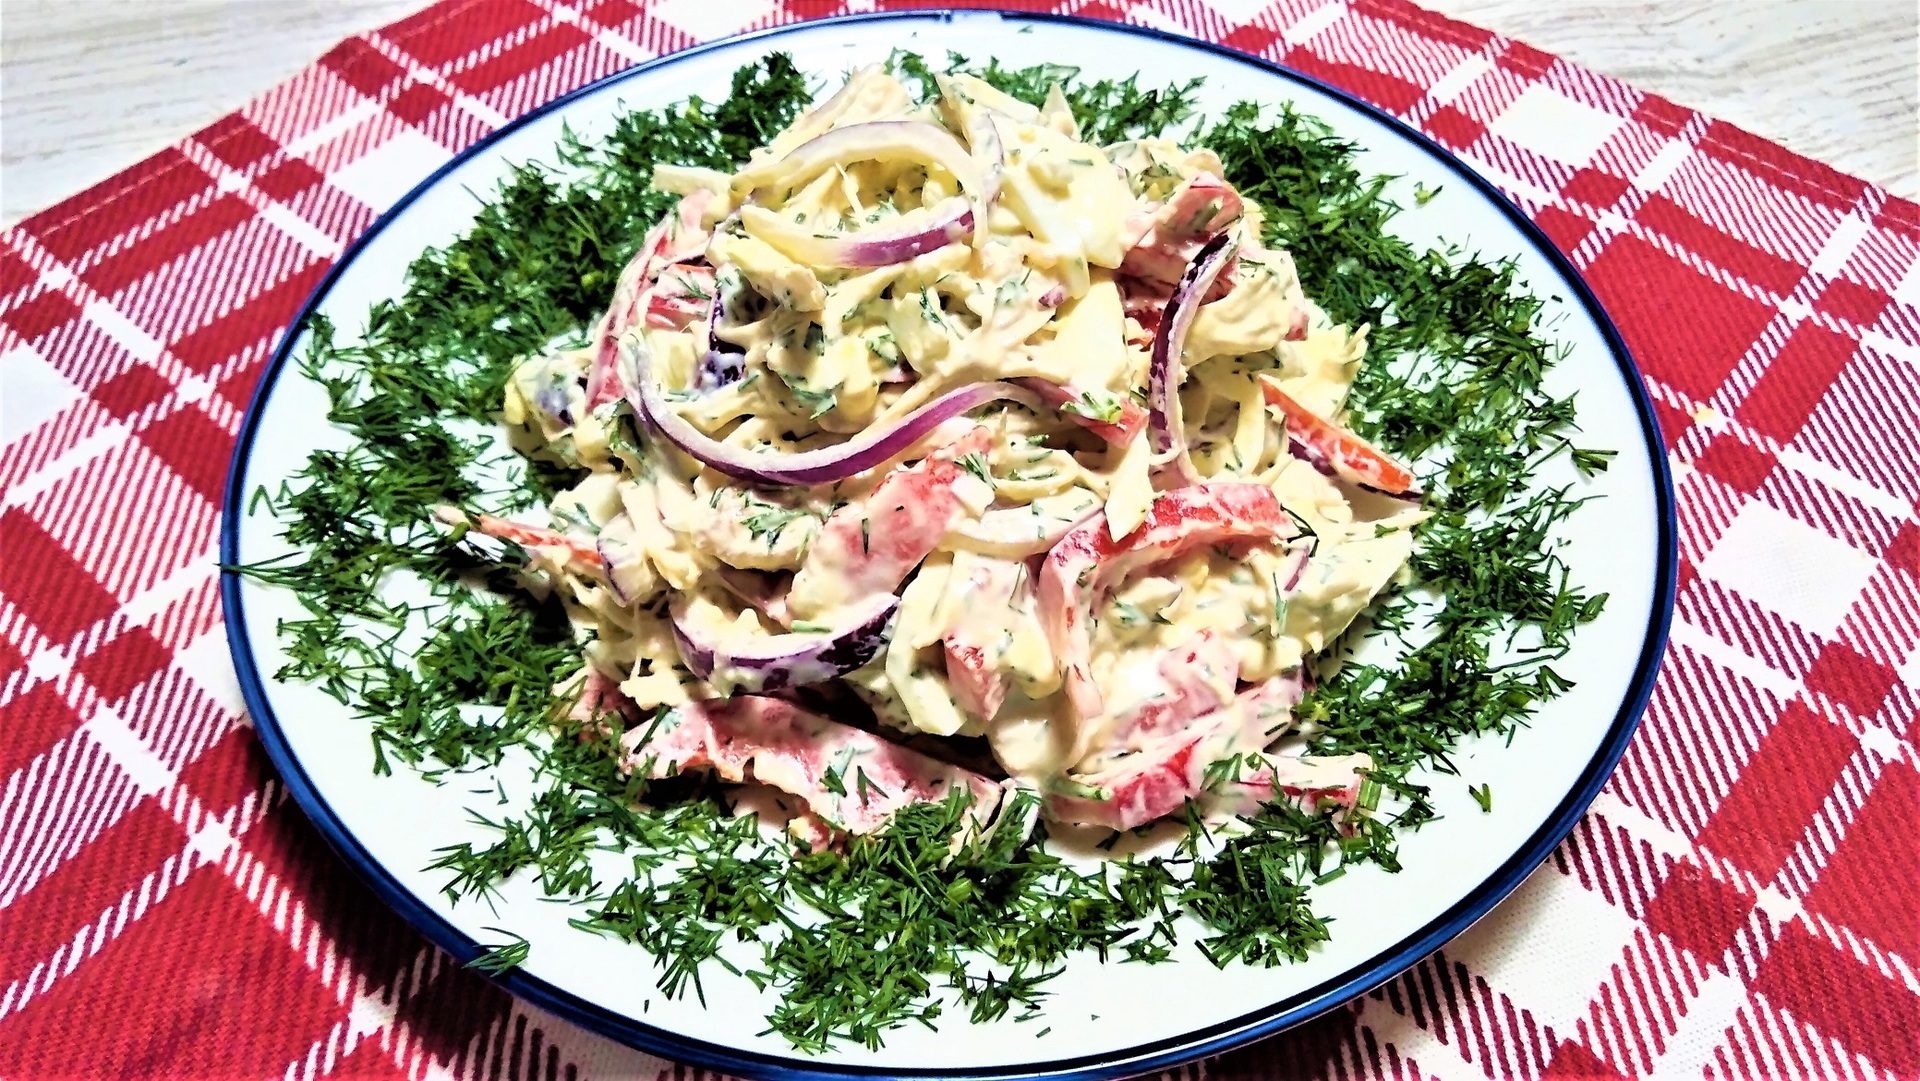 Фото к рецепту: Идеальный салат с курицей